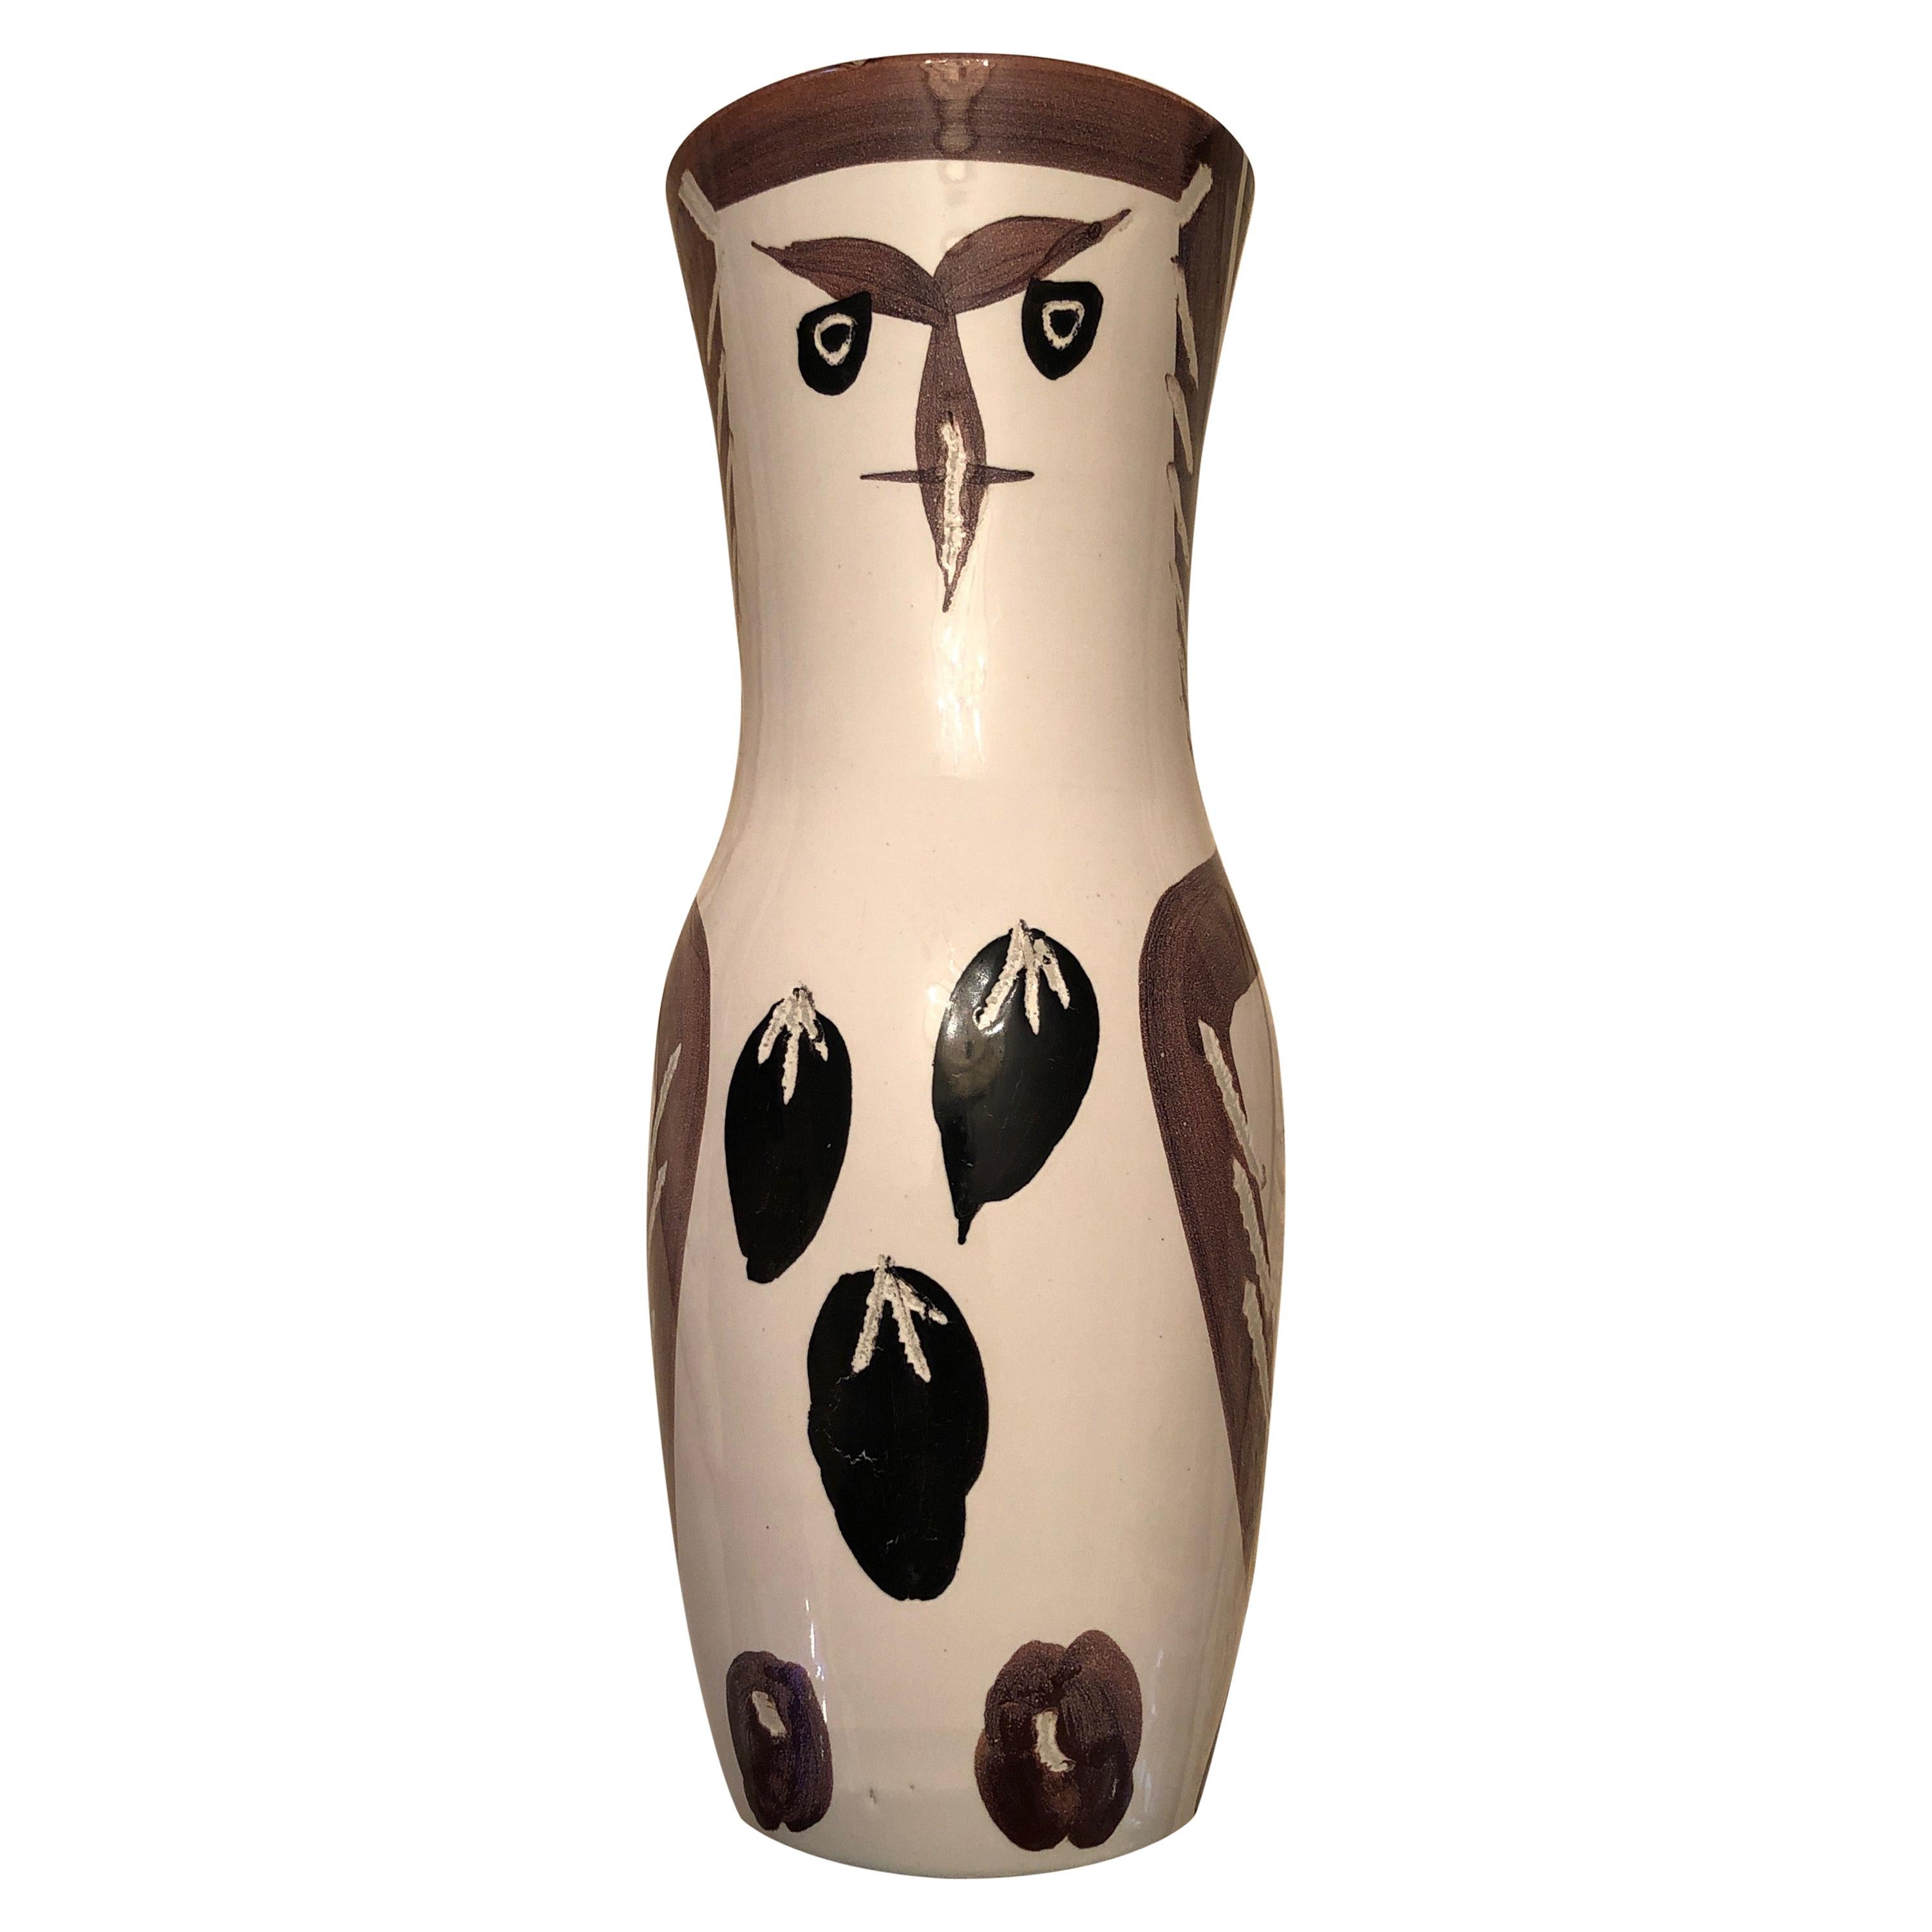 Picasso Original Ceramic Vase "Choutton"